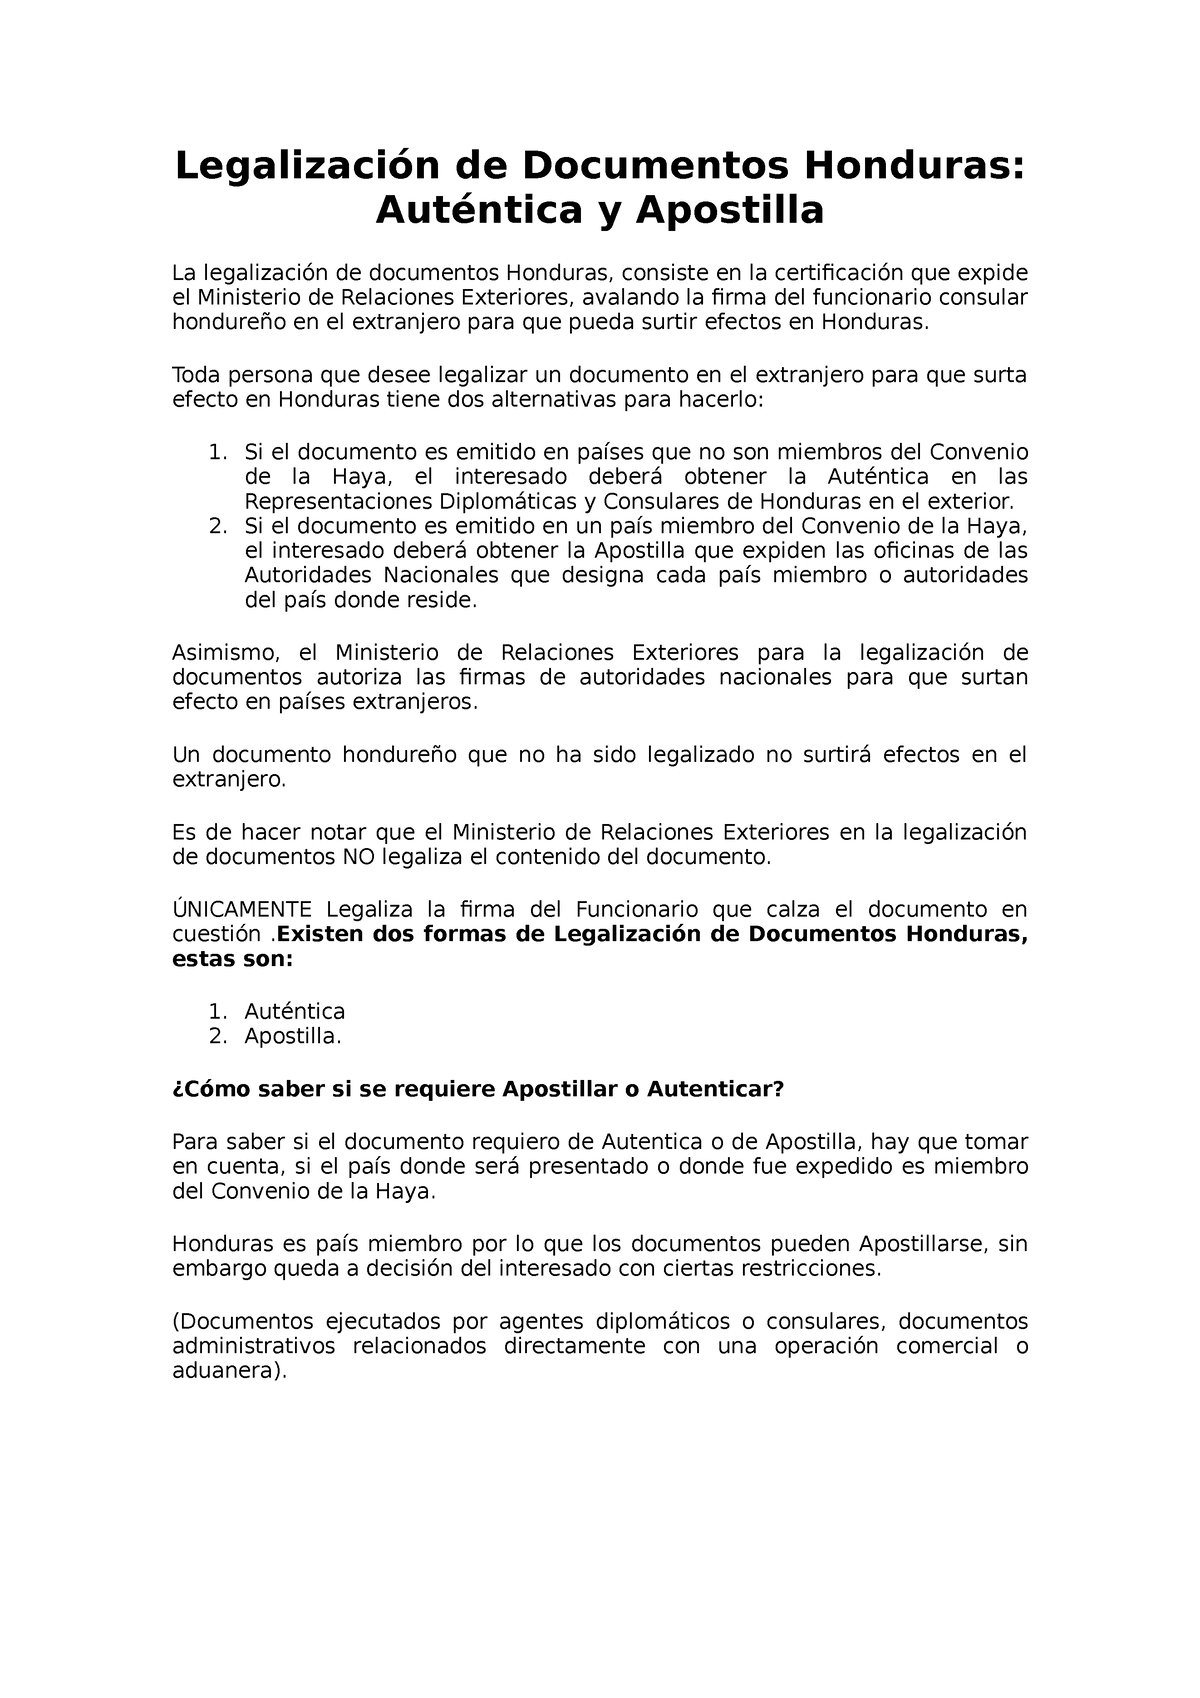 Legalización De Documentos Honduras Legalización De Documentos Honduras Auténtica Y Apostilla 2675